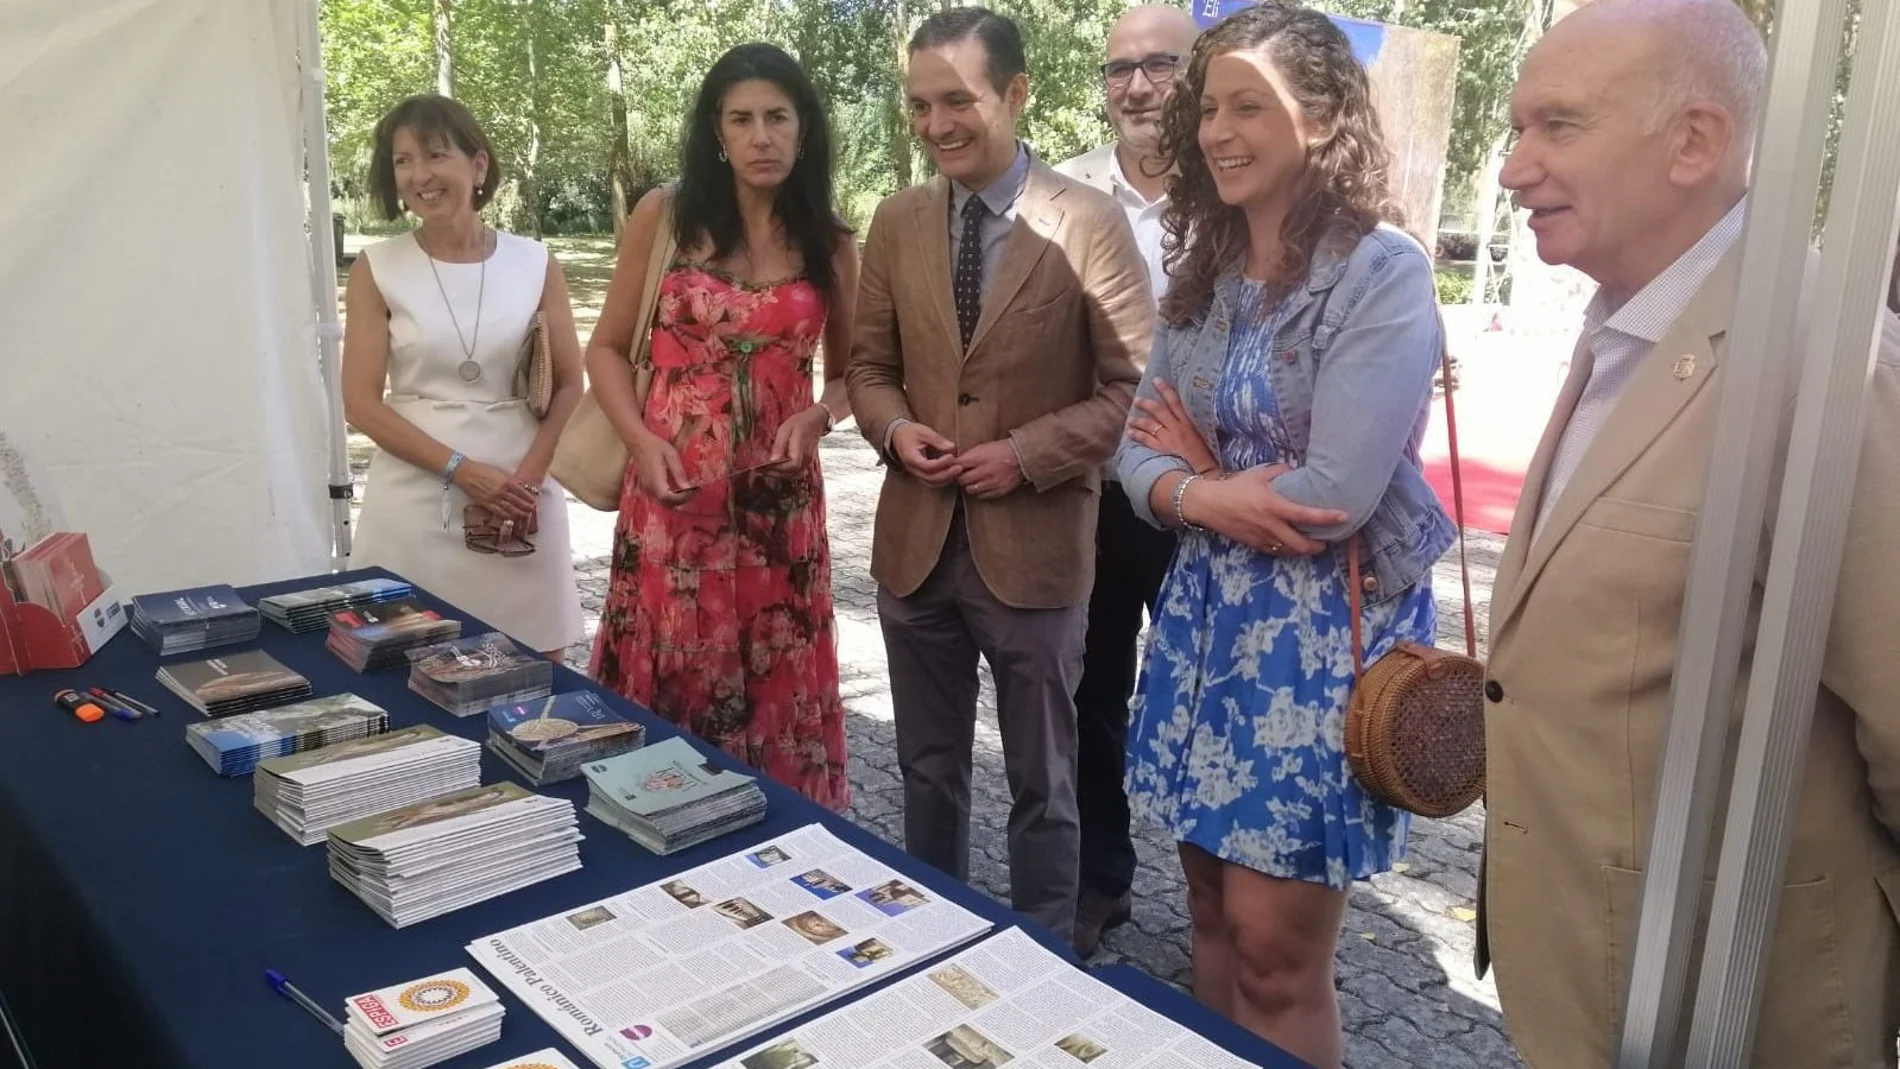 El viceconsejero de Cultura de la Junta, Raúl Fernández Sobrino, visita la feria junto a la diputada Carolina Valbuena